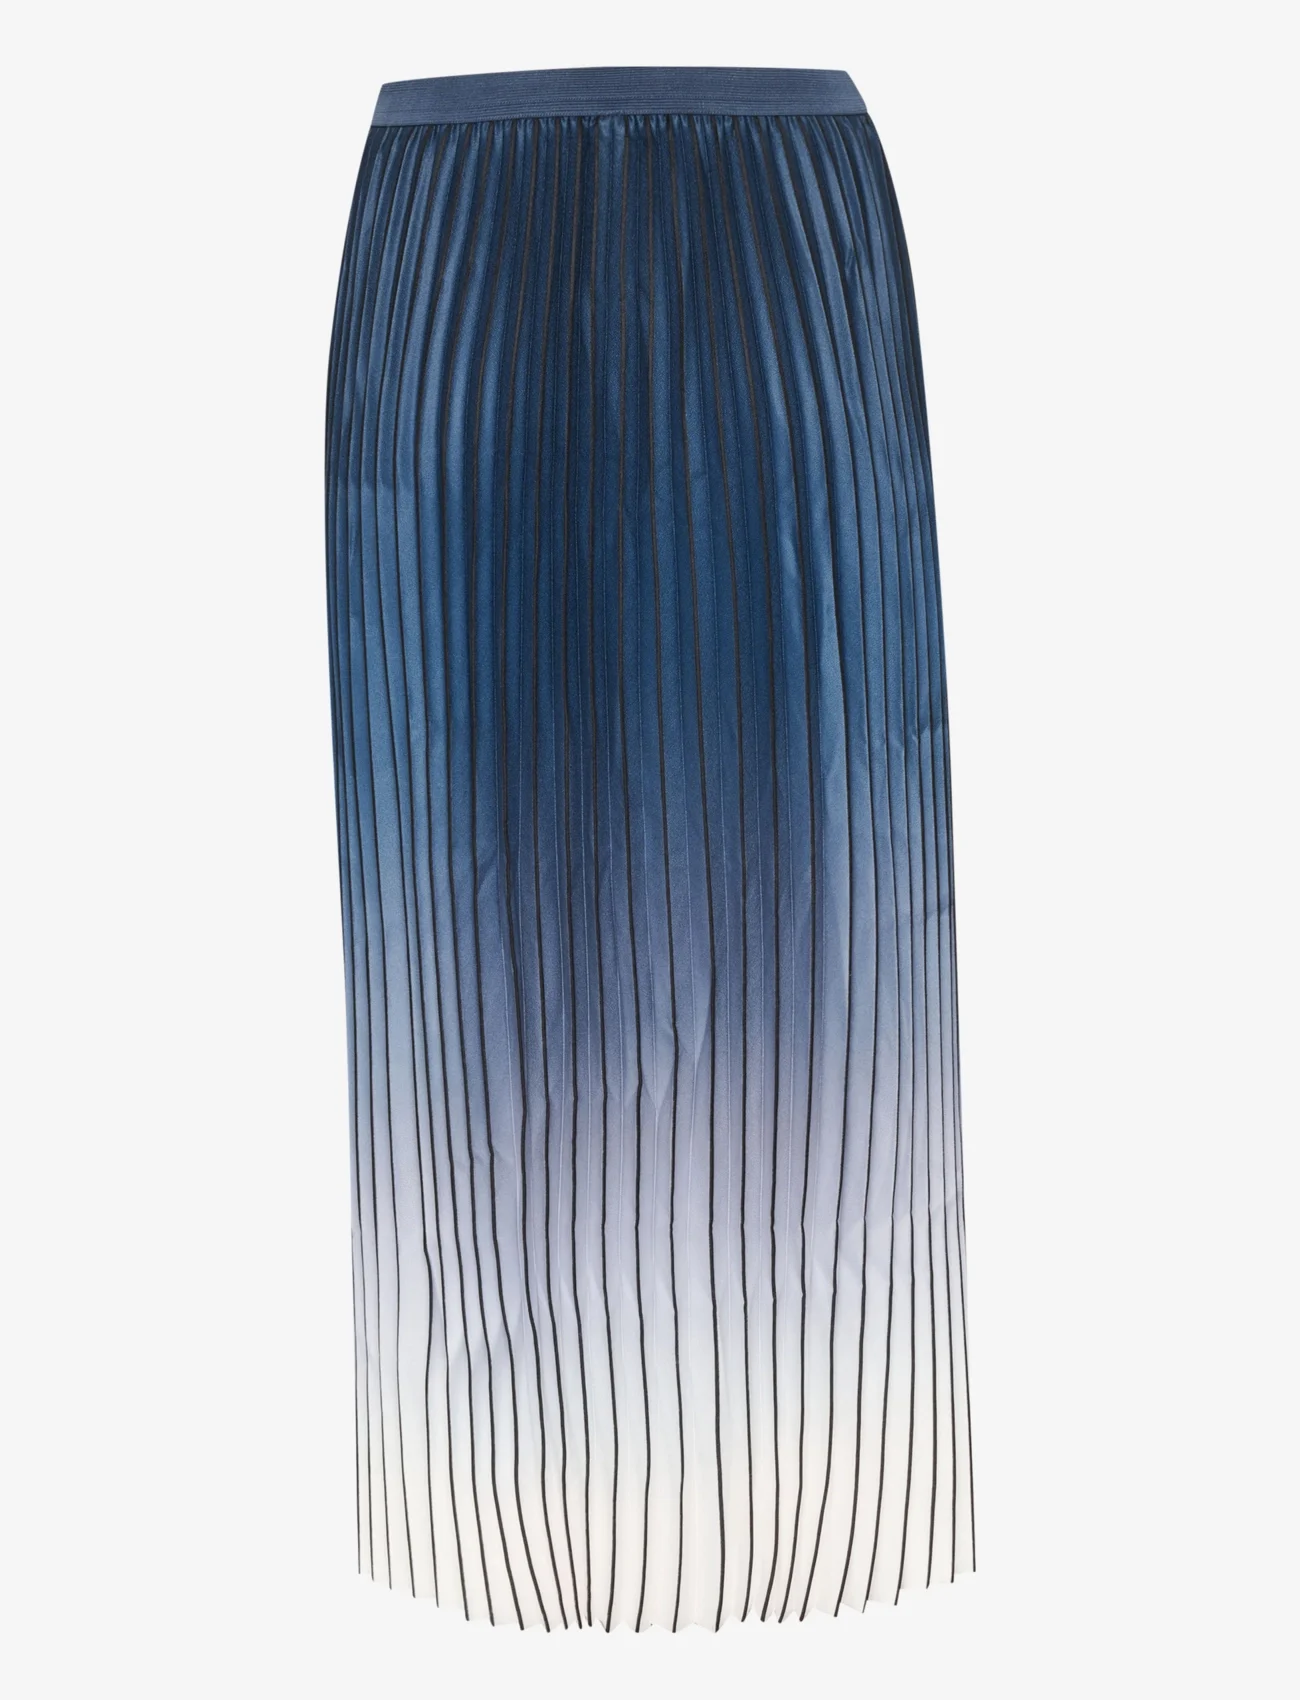 Culture - CUscarlett Ombre Skirt - plisseskjørt - dress blues - 1